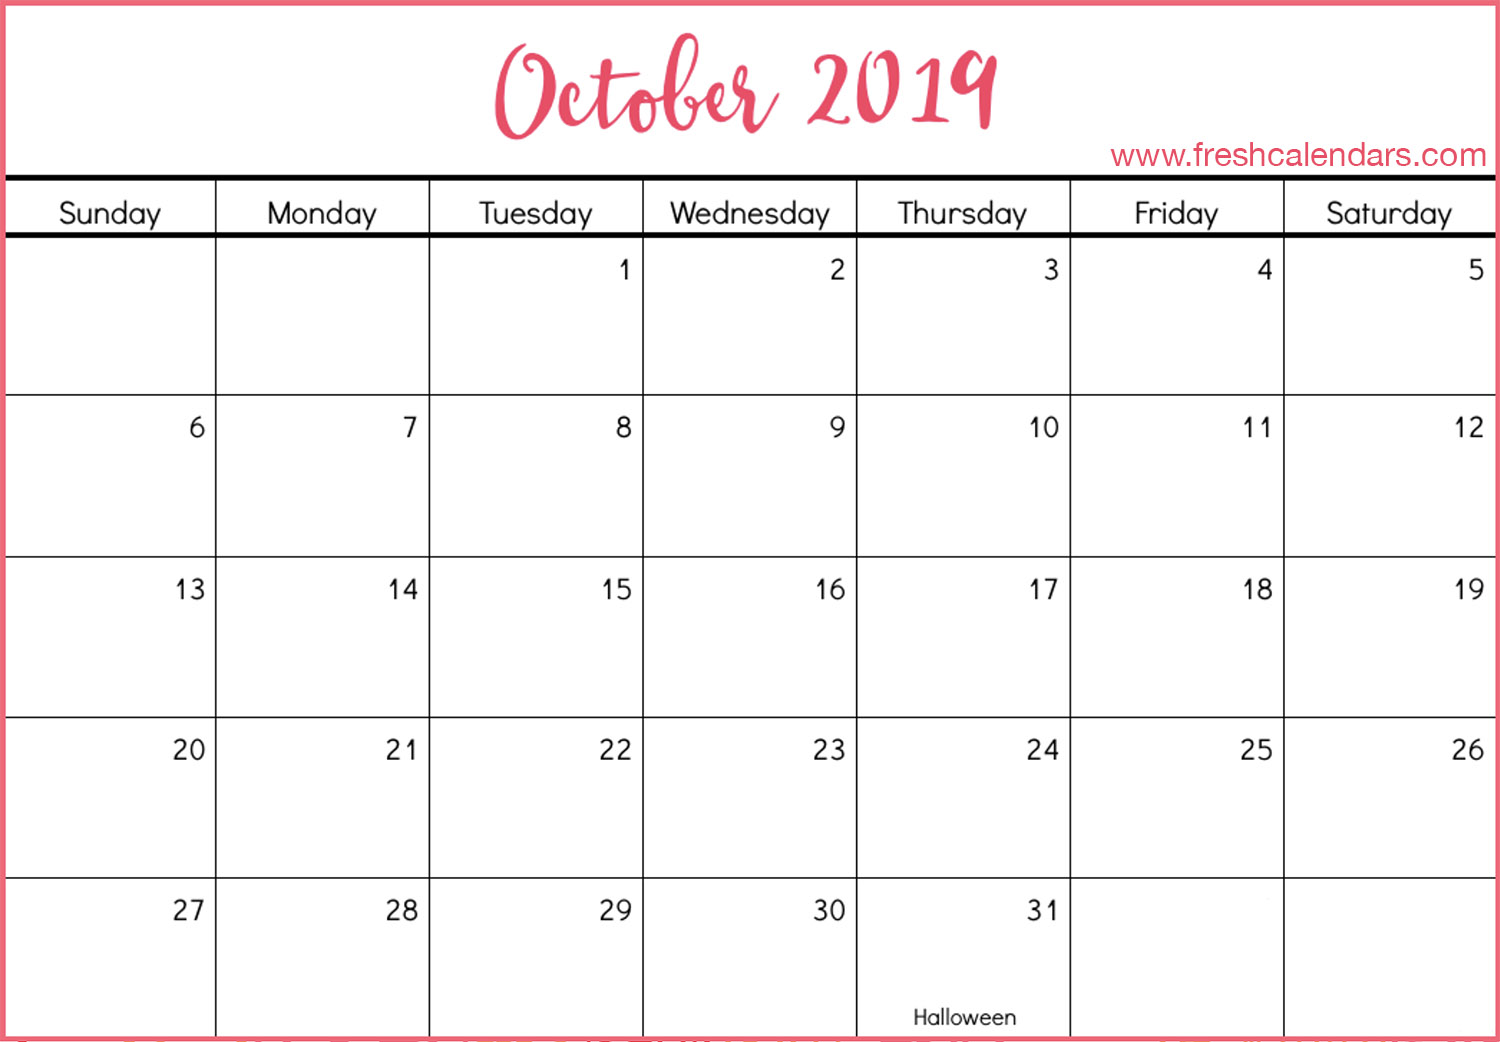 october-2019-calendar-printable